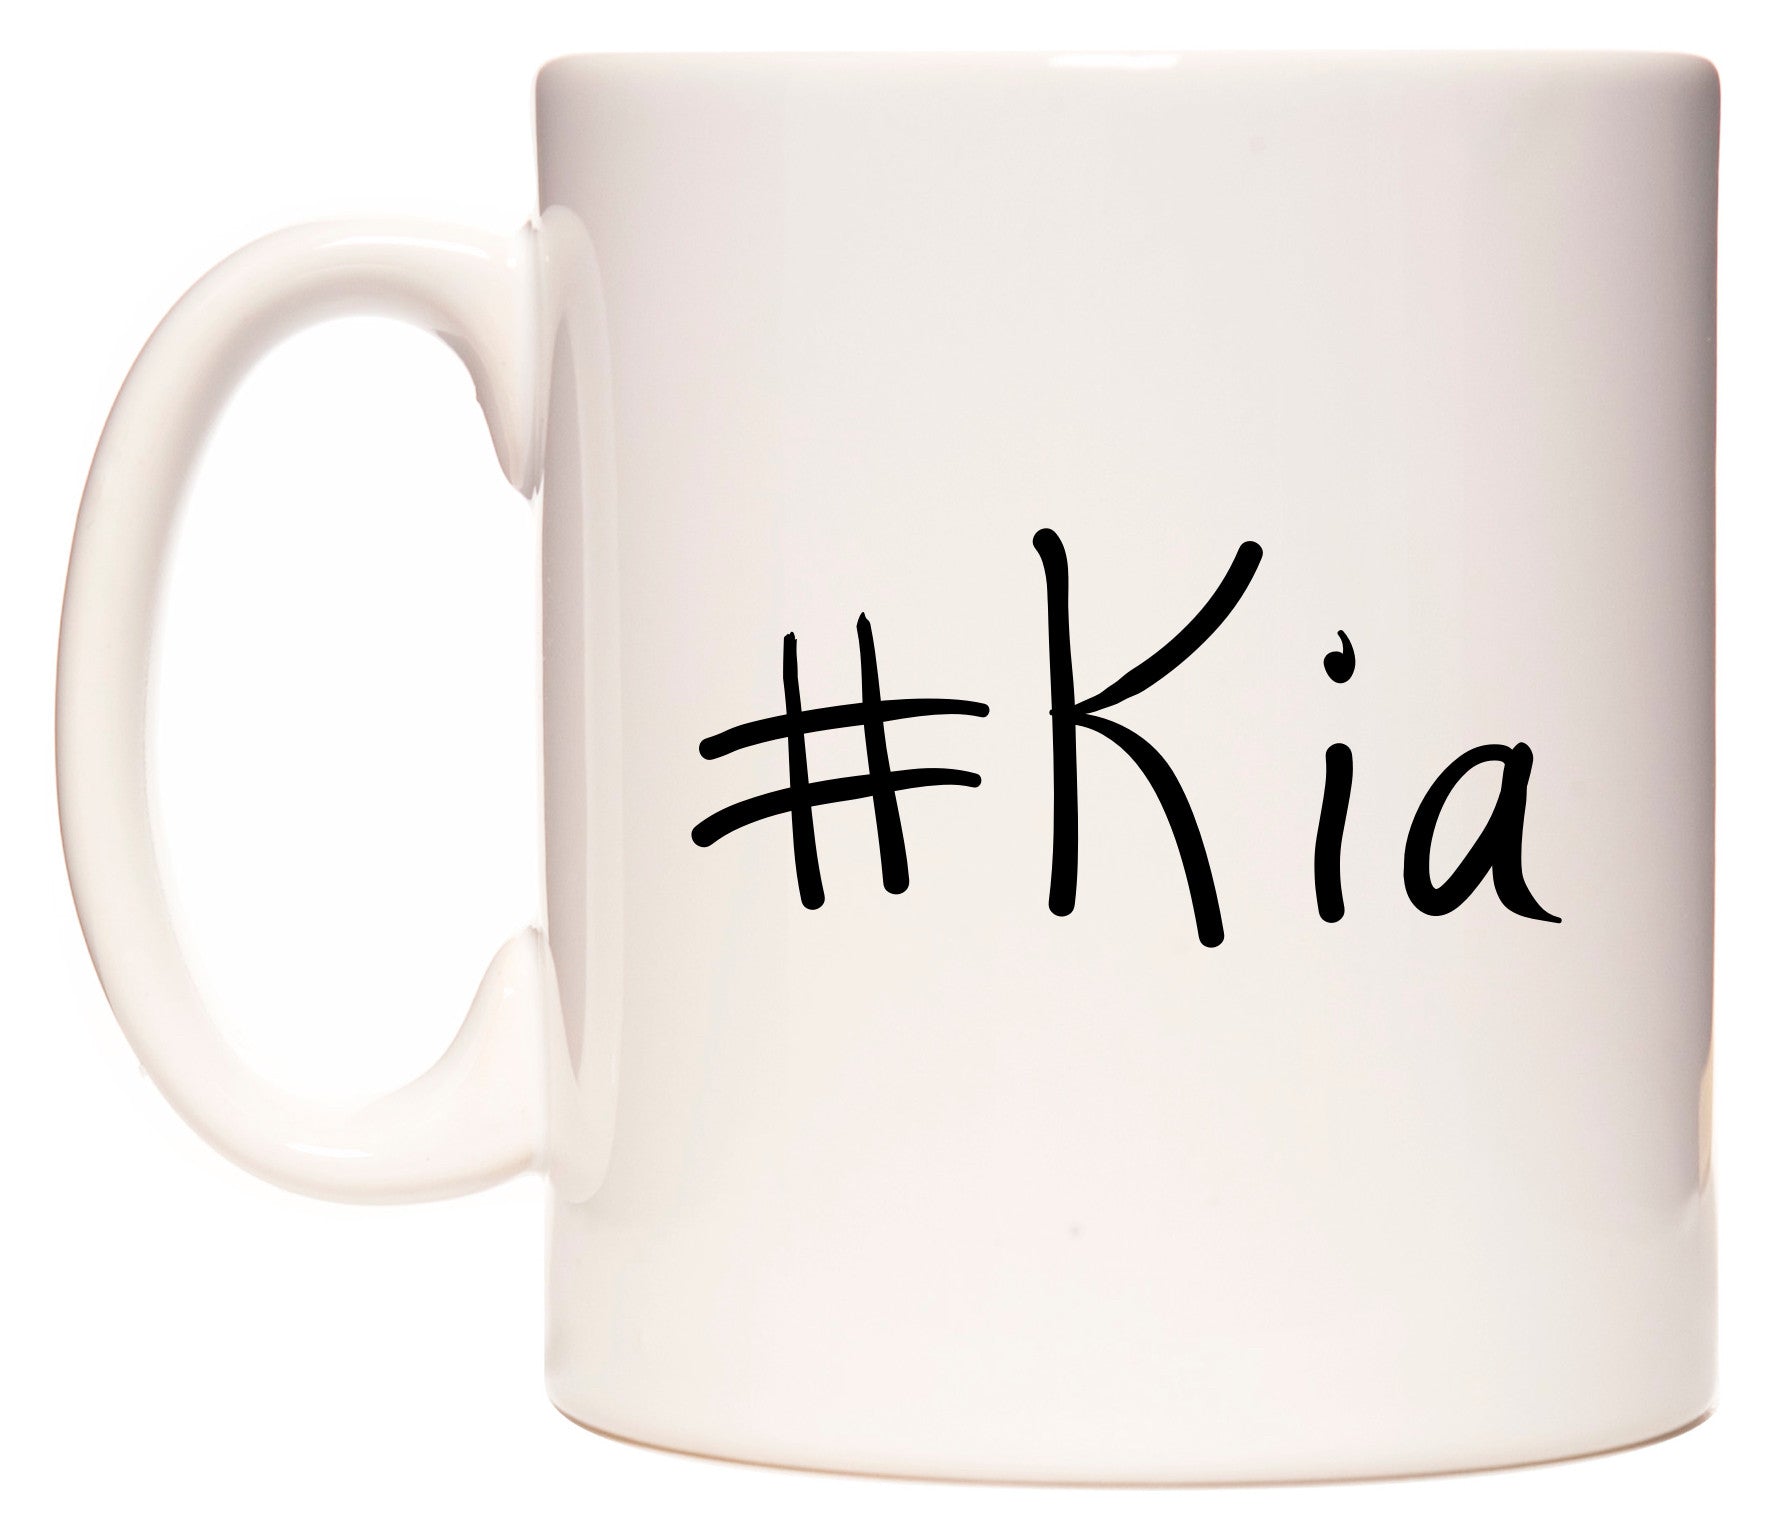 This mug features #Kia